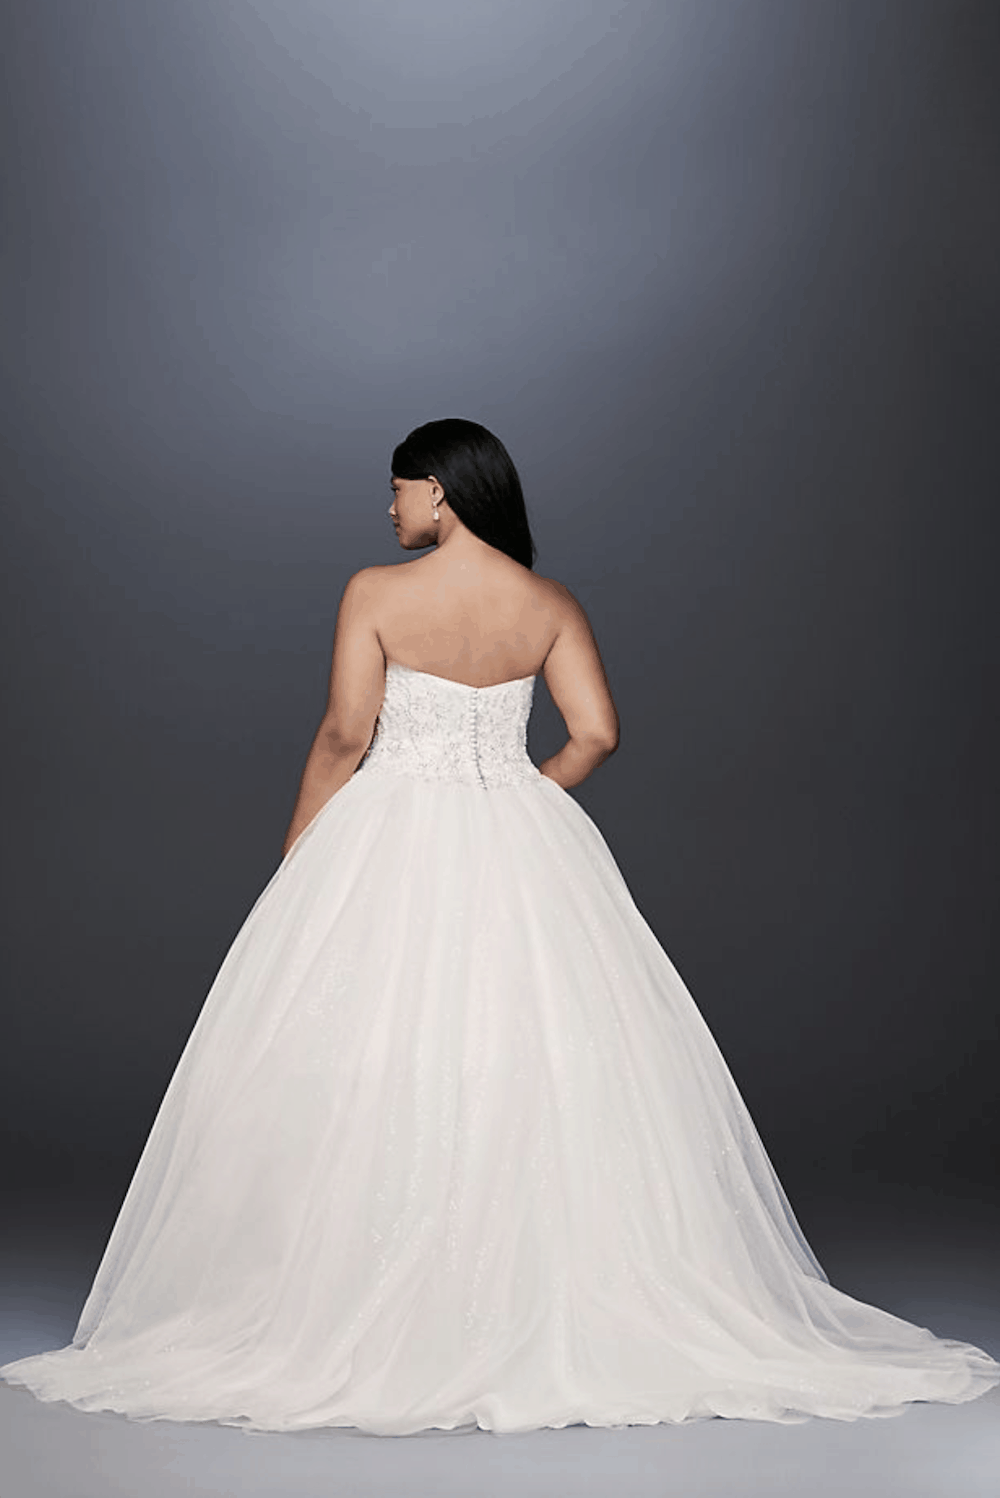 Disney Theme Plus Size Bridal Gowns Fairy Tale Plus Size Wedding Dresses